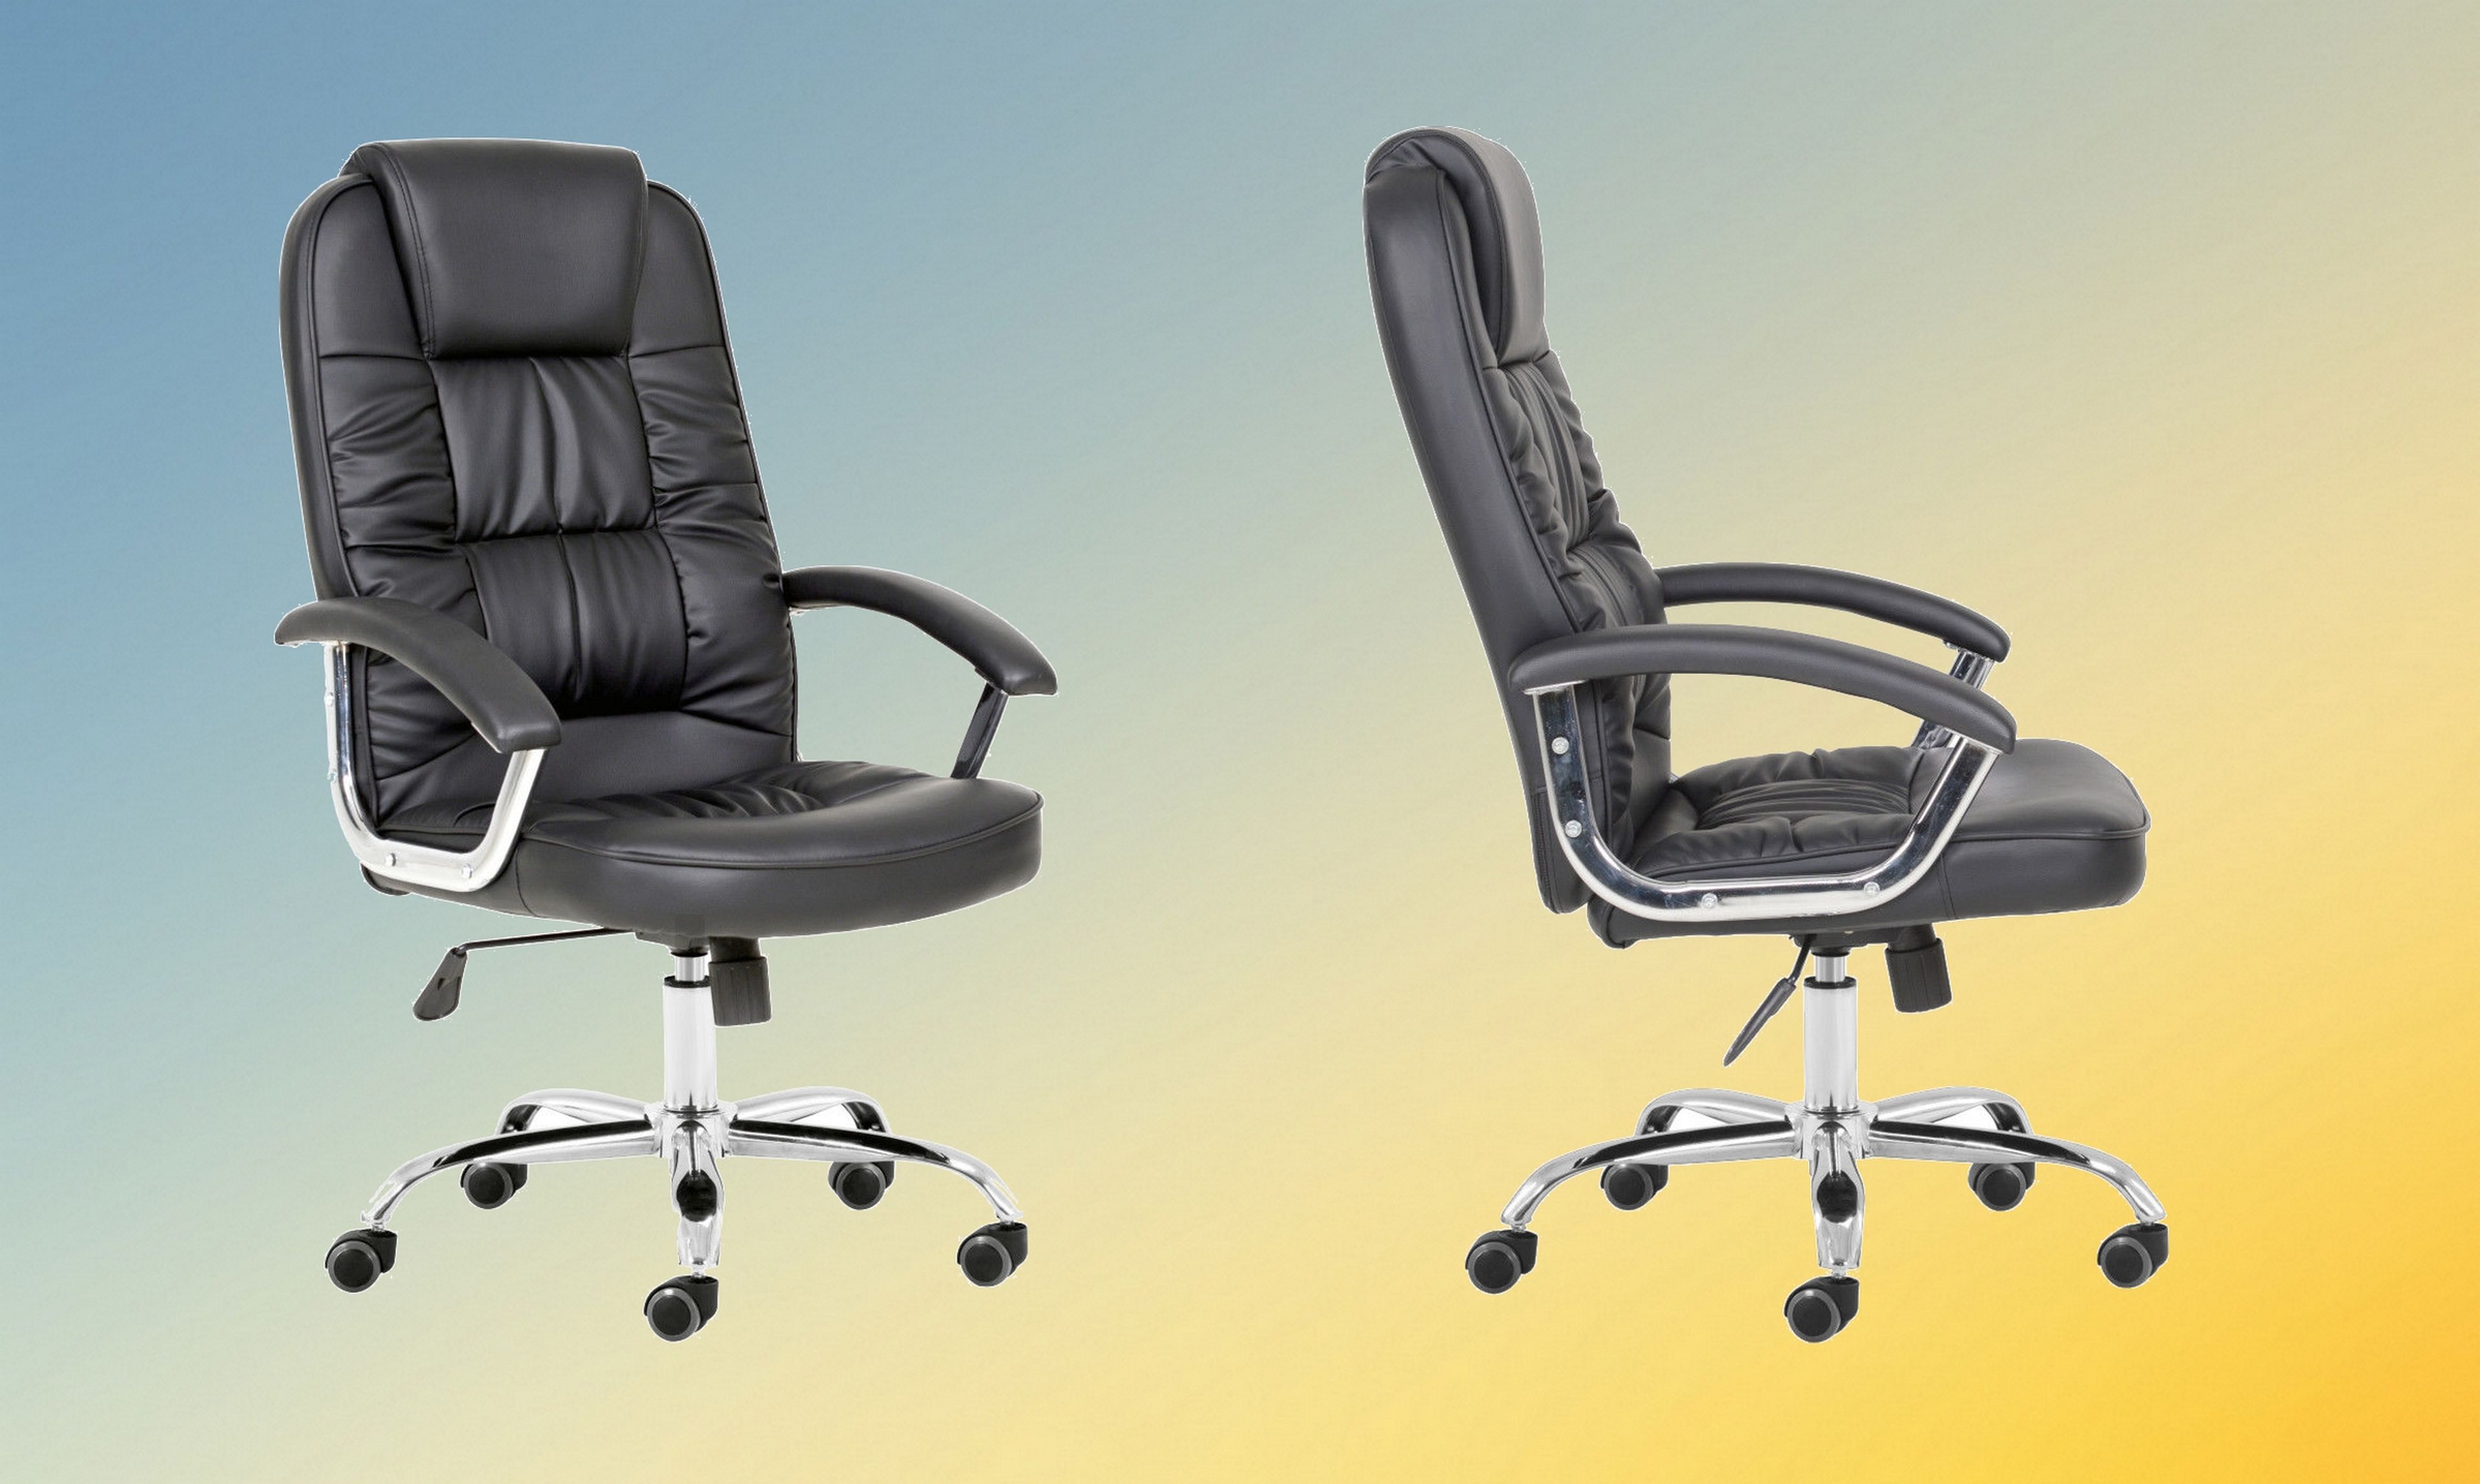 Esta silla de oficina acolchada es perfecta para trabajar con comodidad, y solo cuesta 59,99 euros